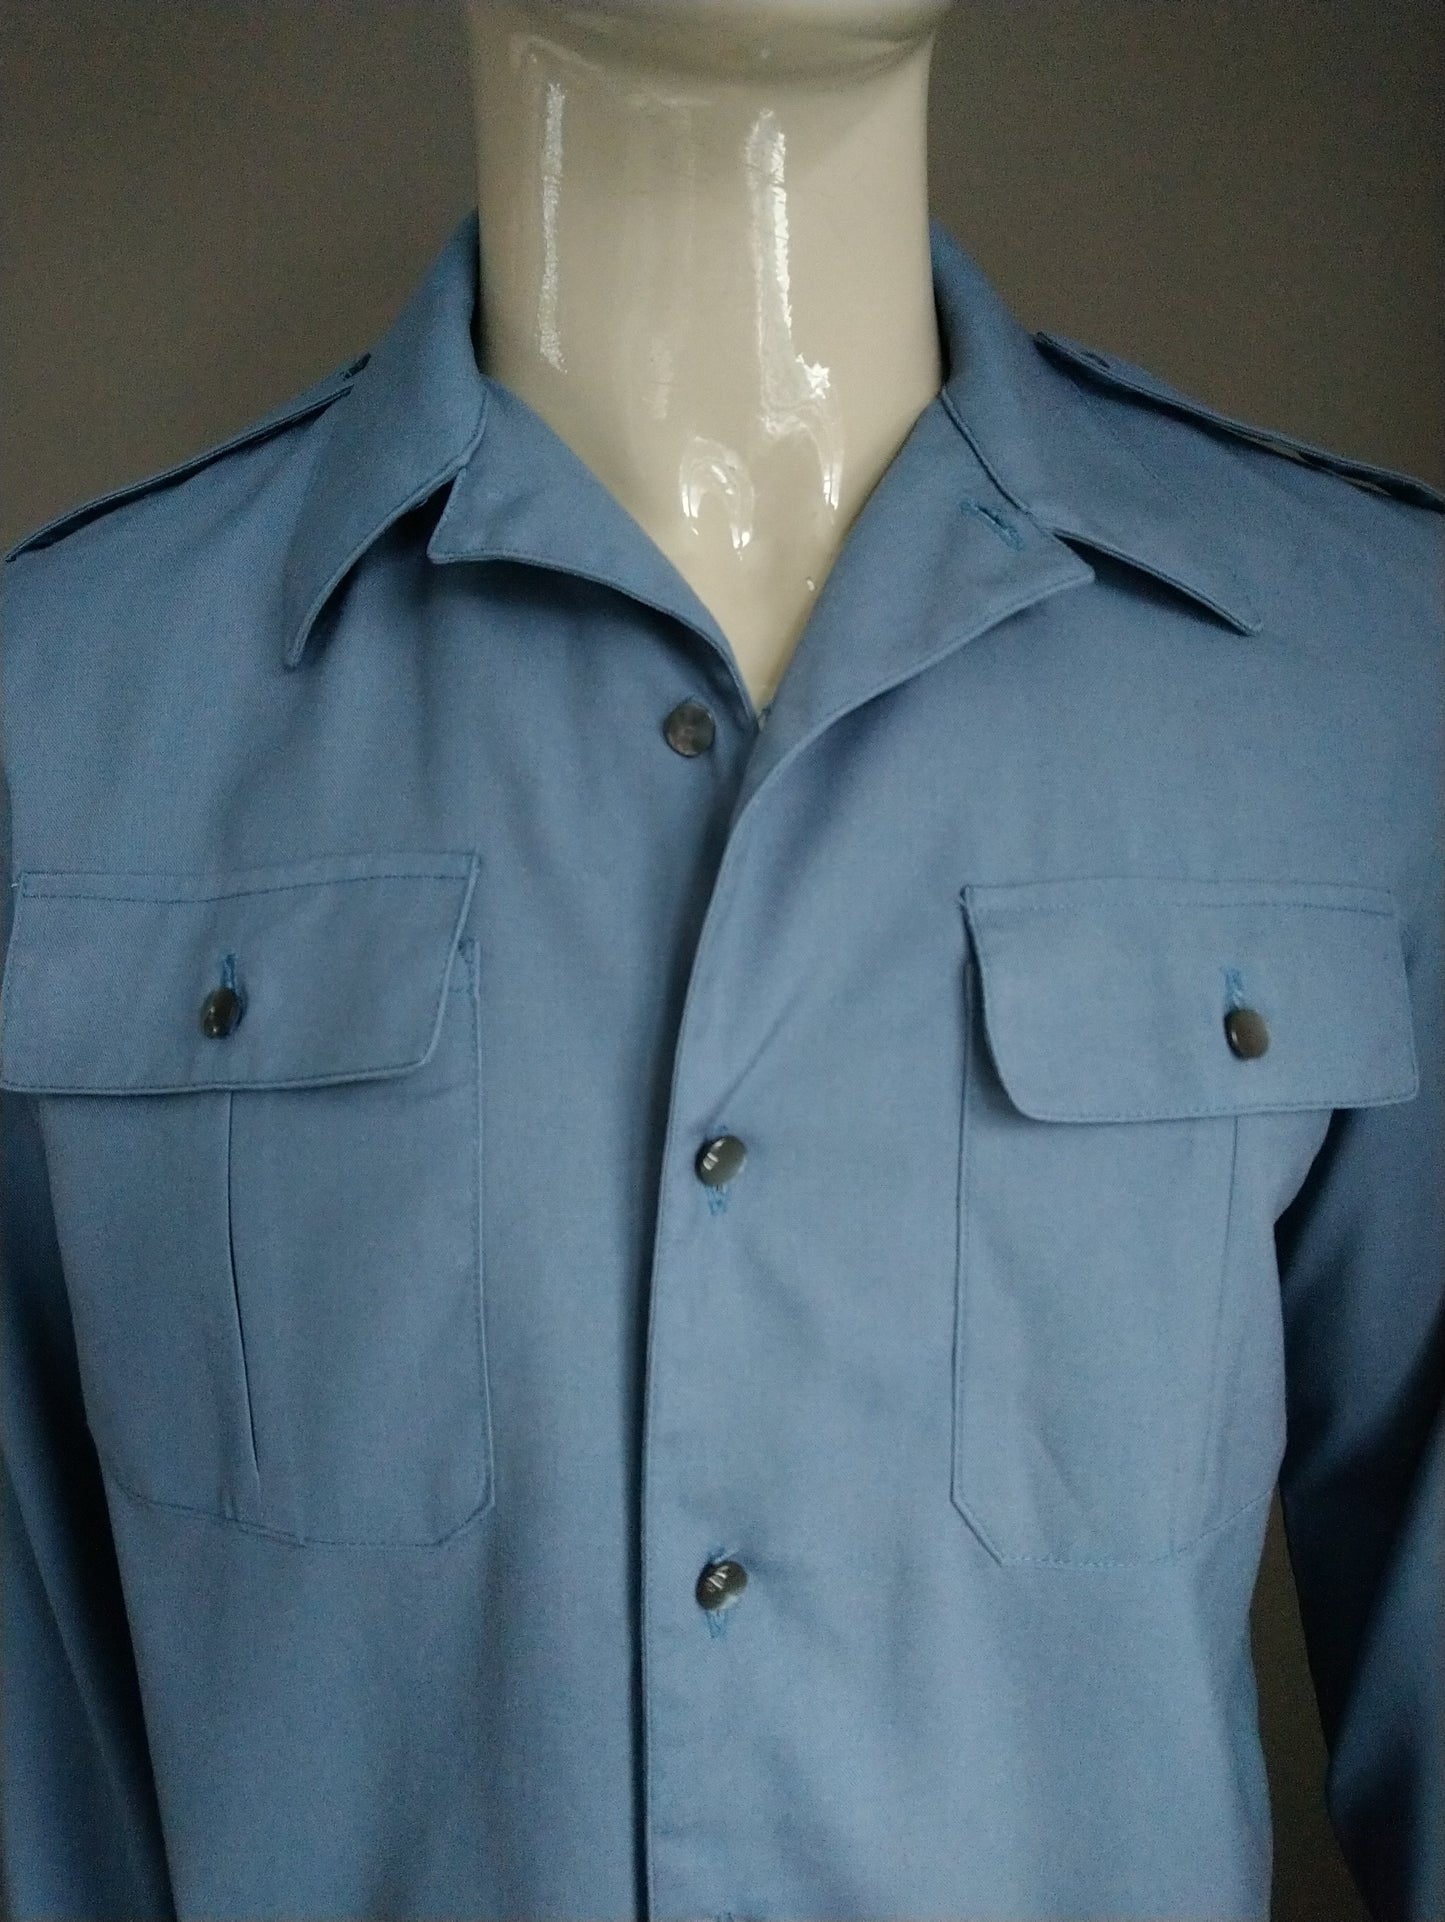 Vintage 70er Hemd mit Punktkragen. Blau gefärbt. Größe L.